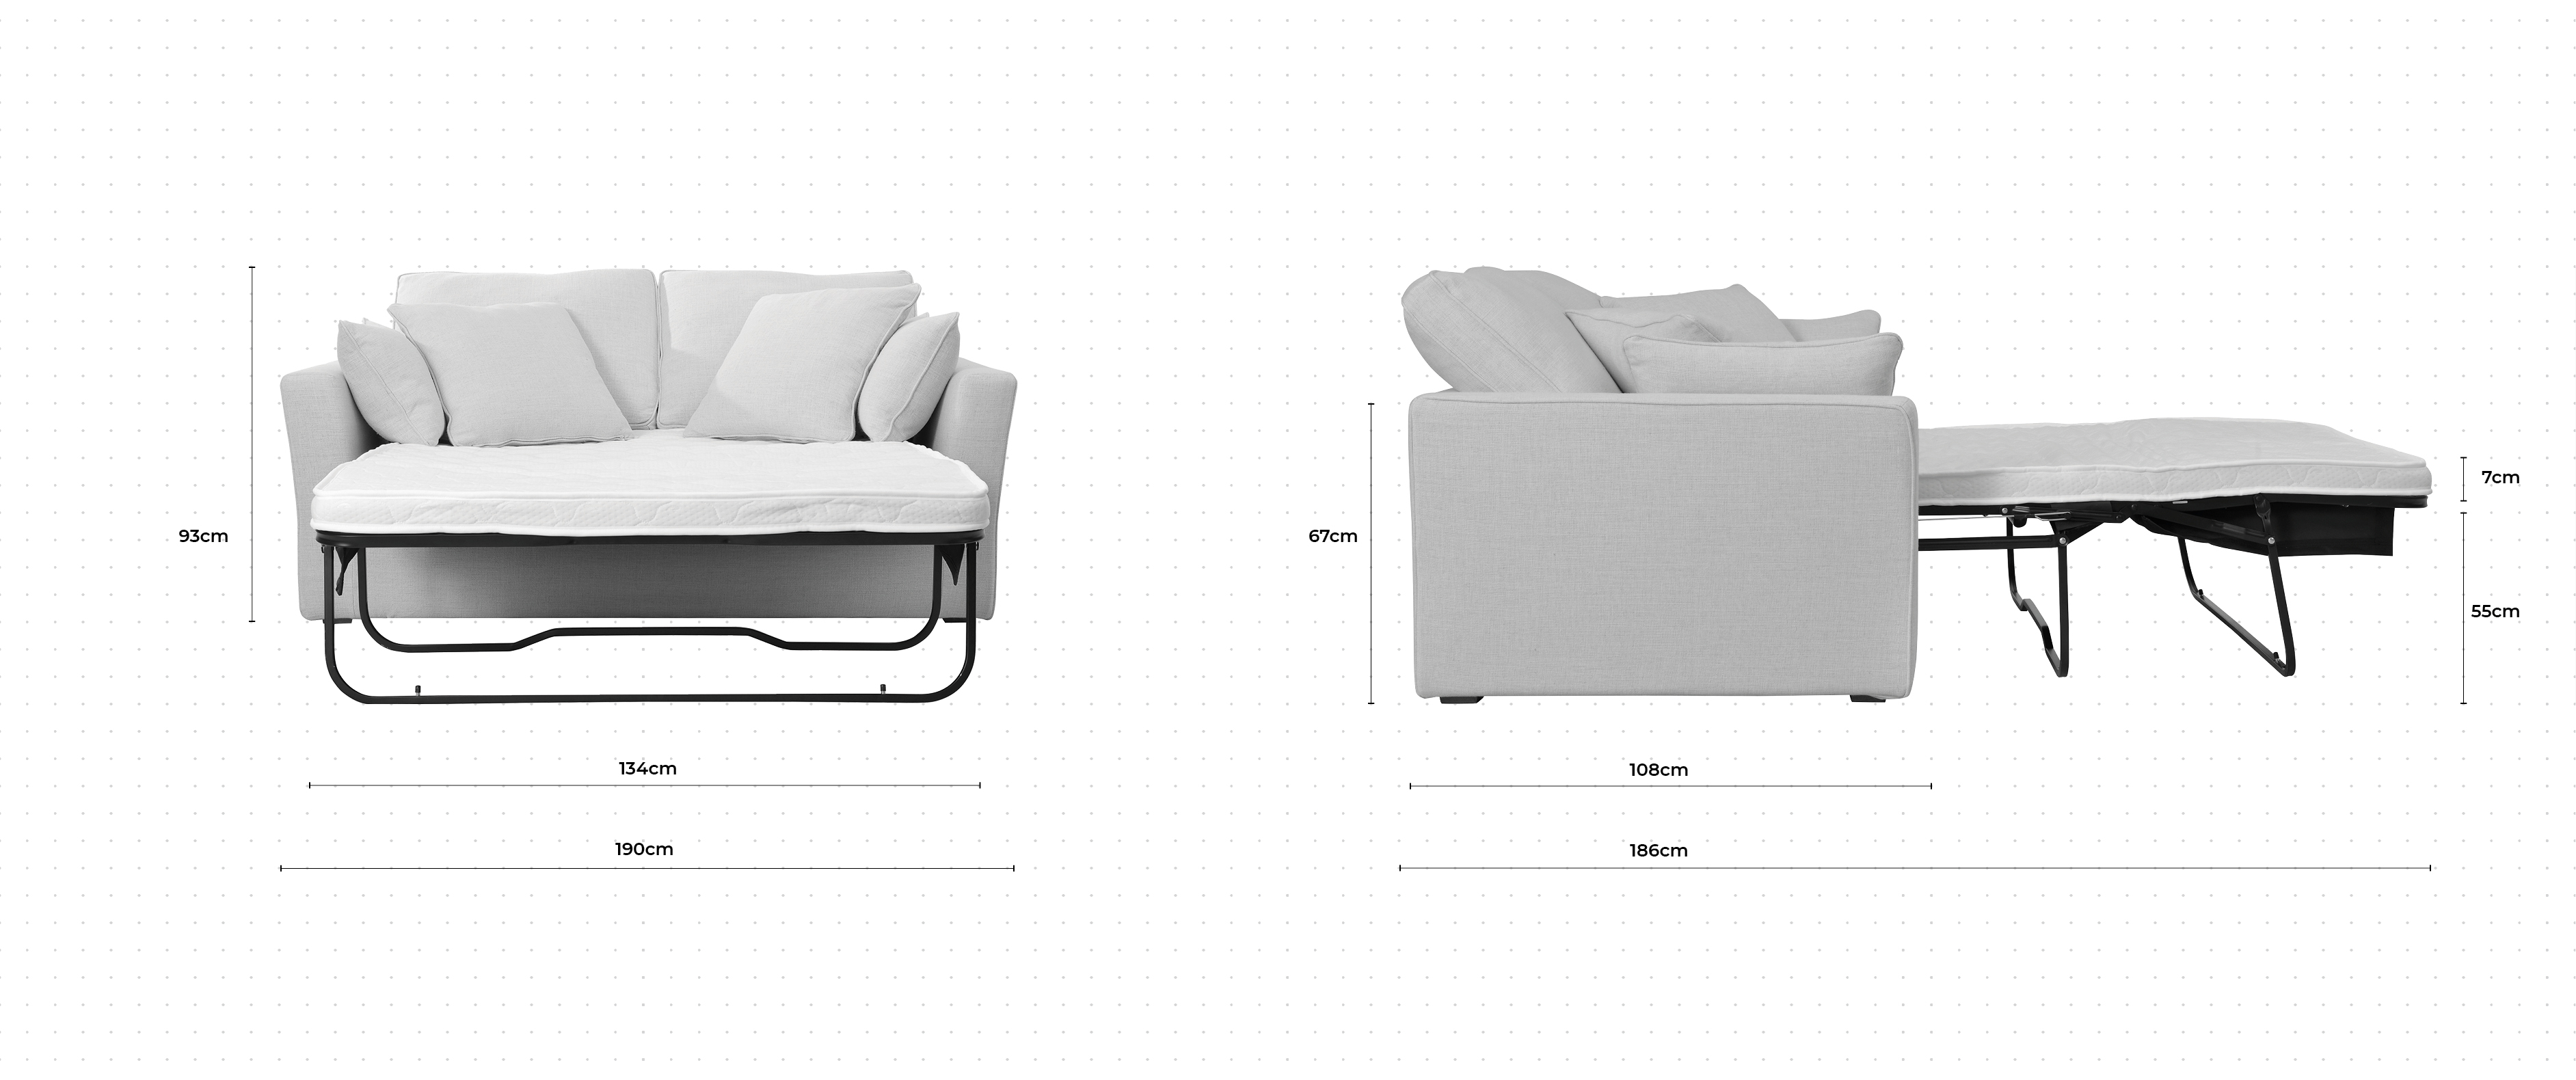 Caruso 2.5 Seater Sofa Bed dimensions